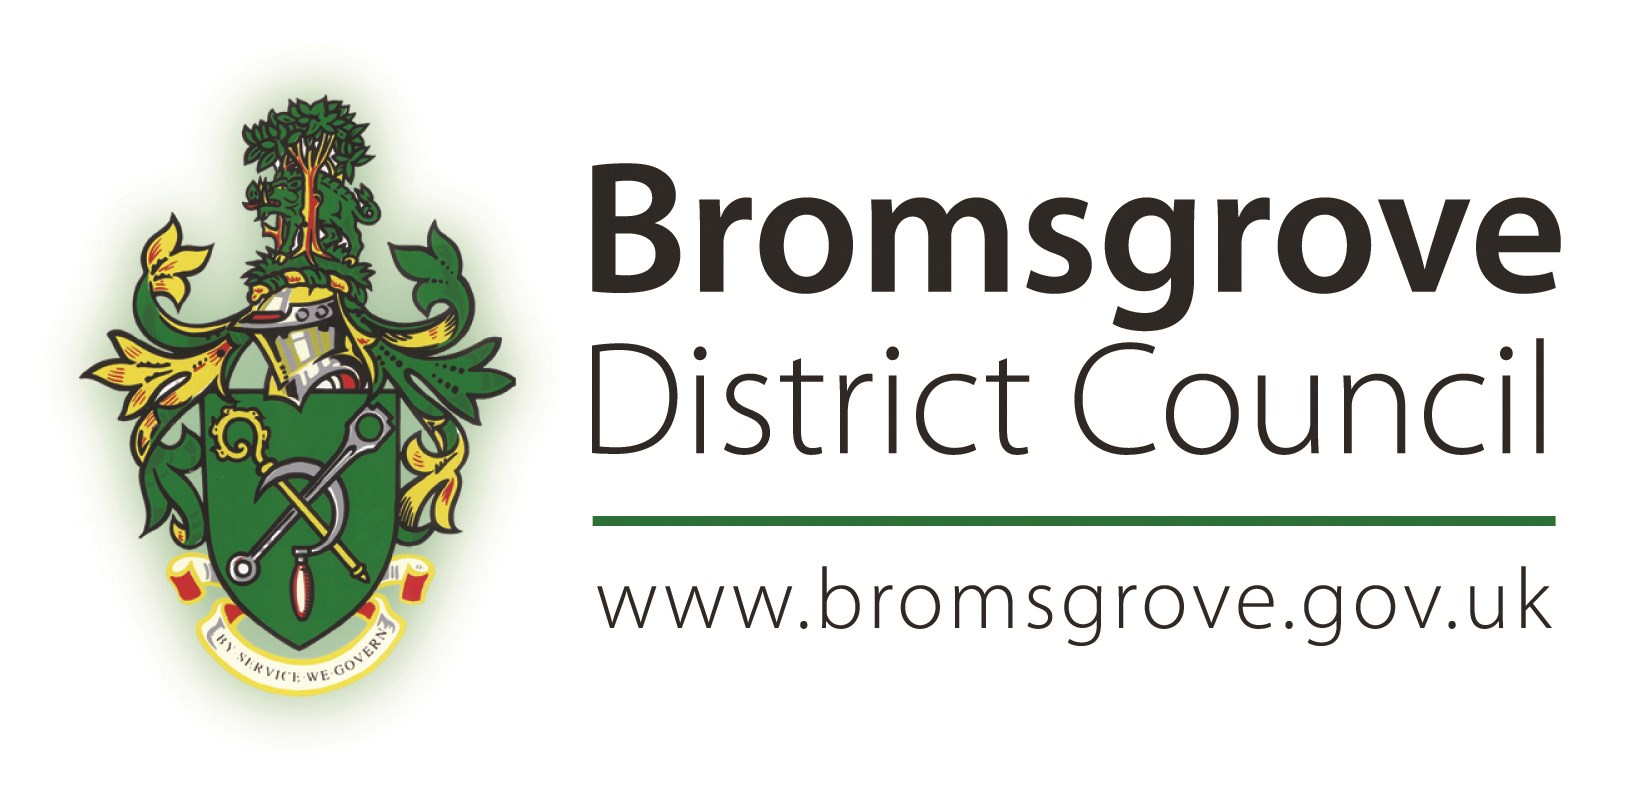 Bromsgirove District Council logo 